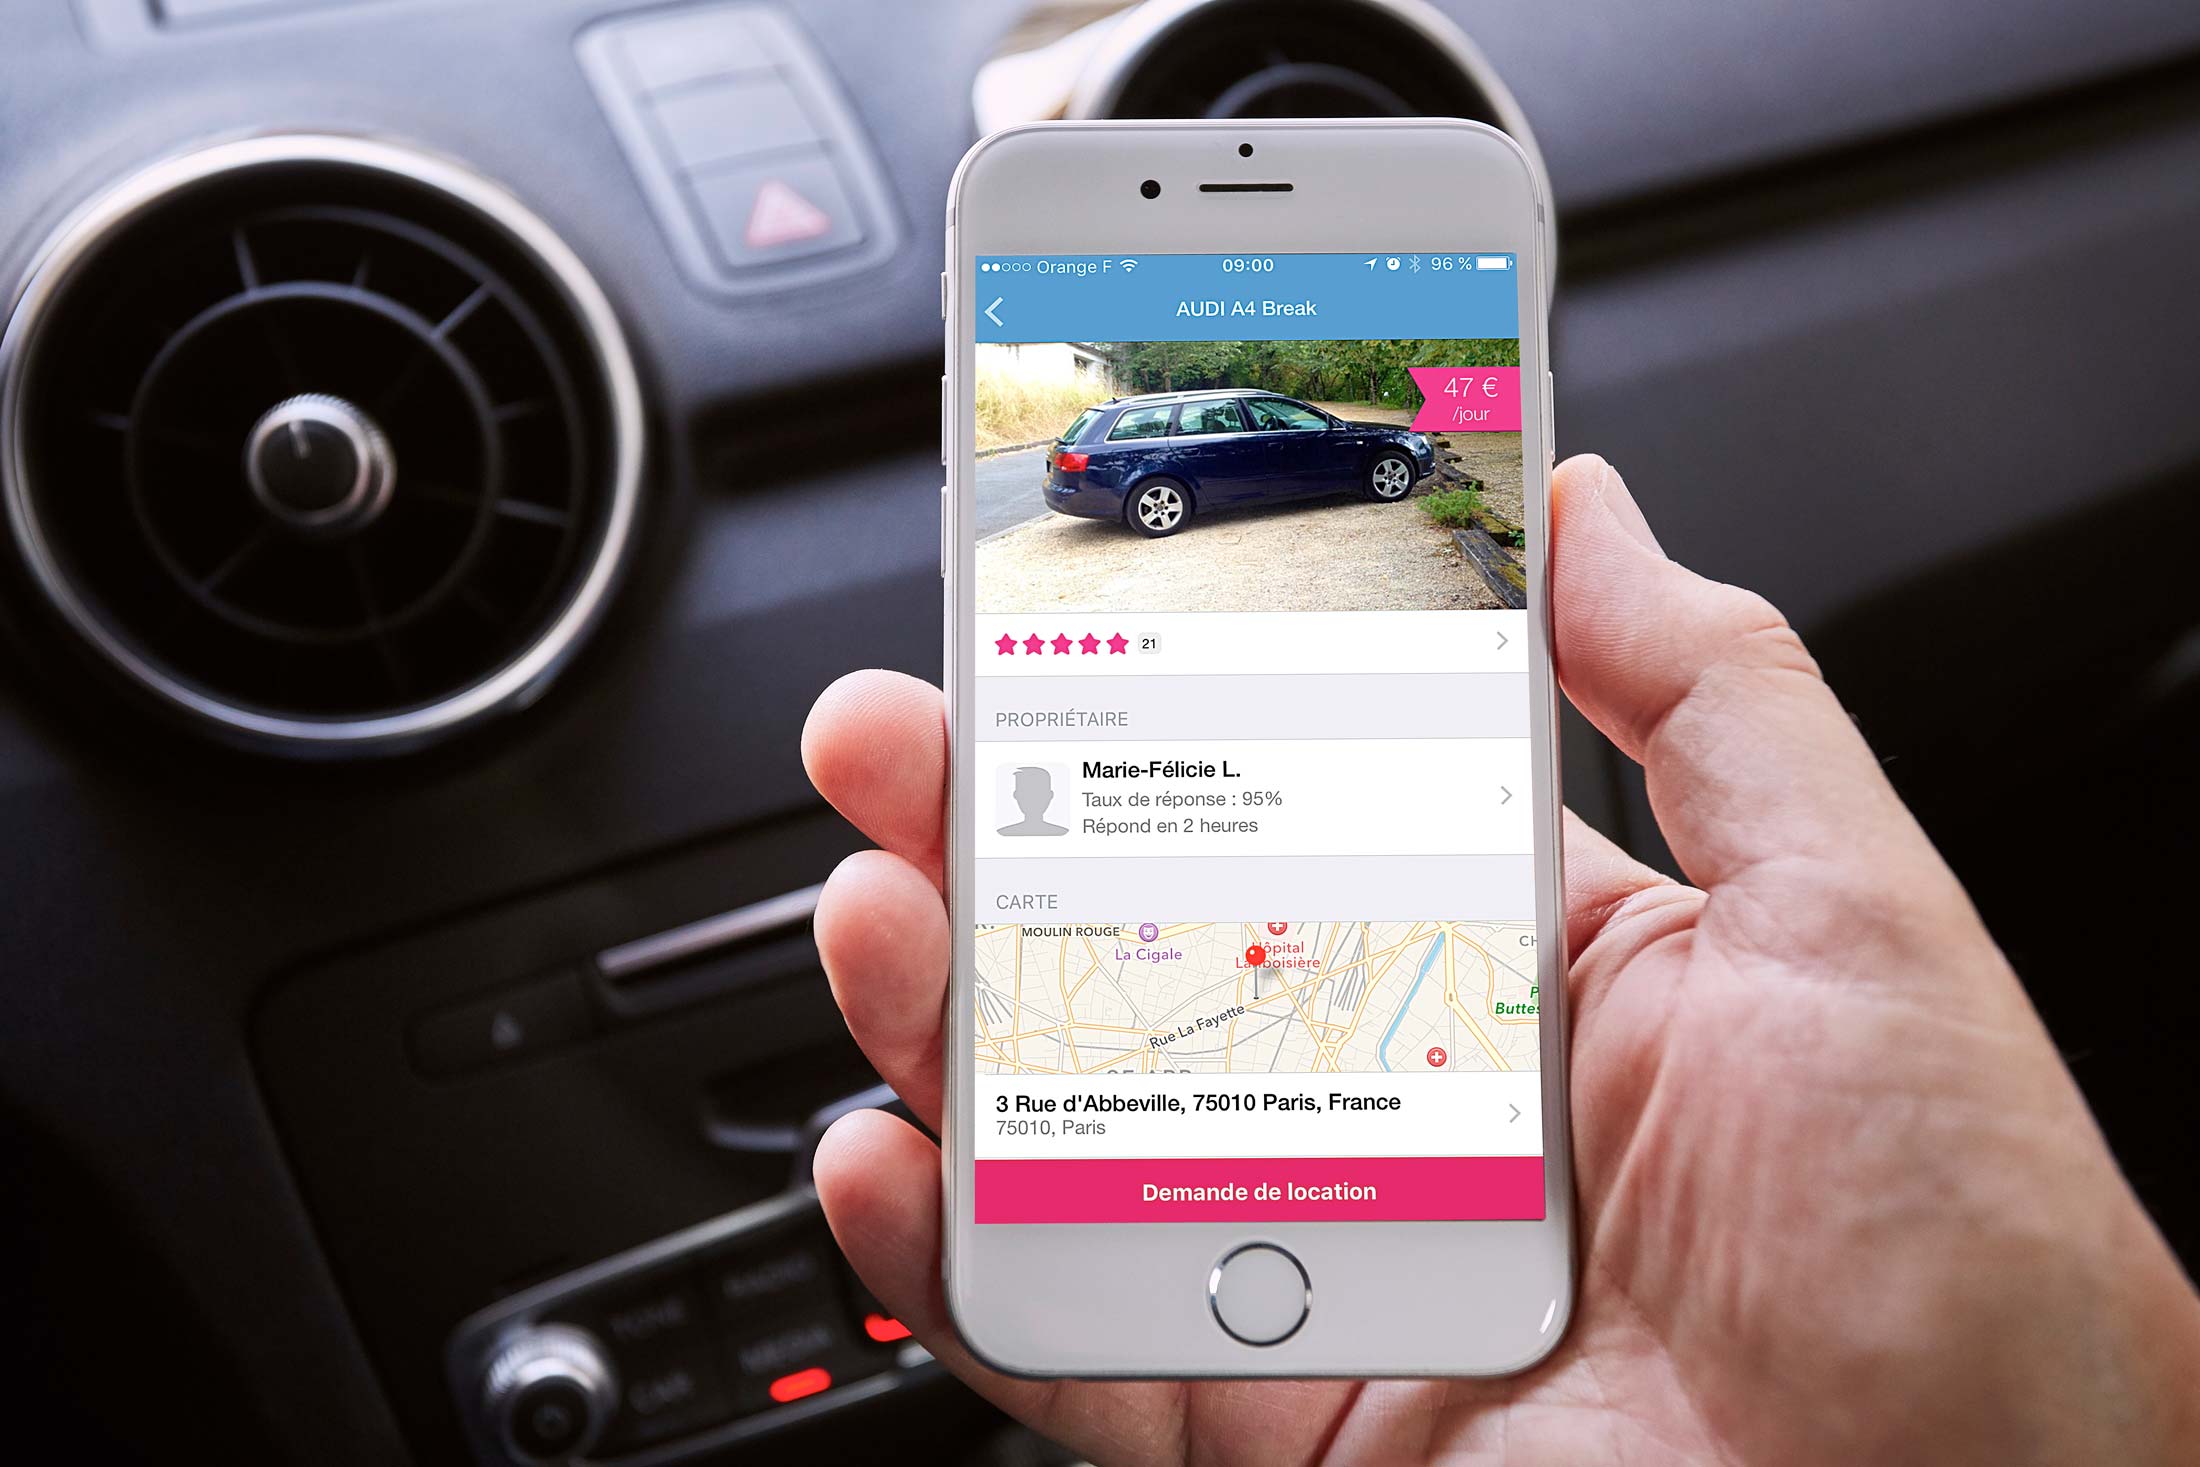 The peer-to-peer car rental app Drivy, in use in Paris, France.
